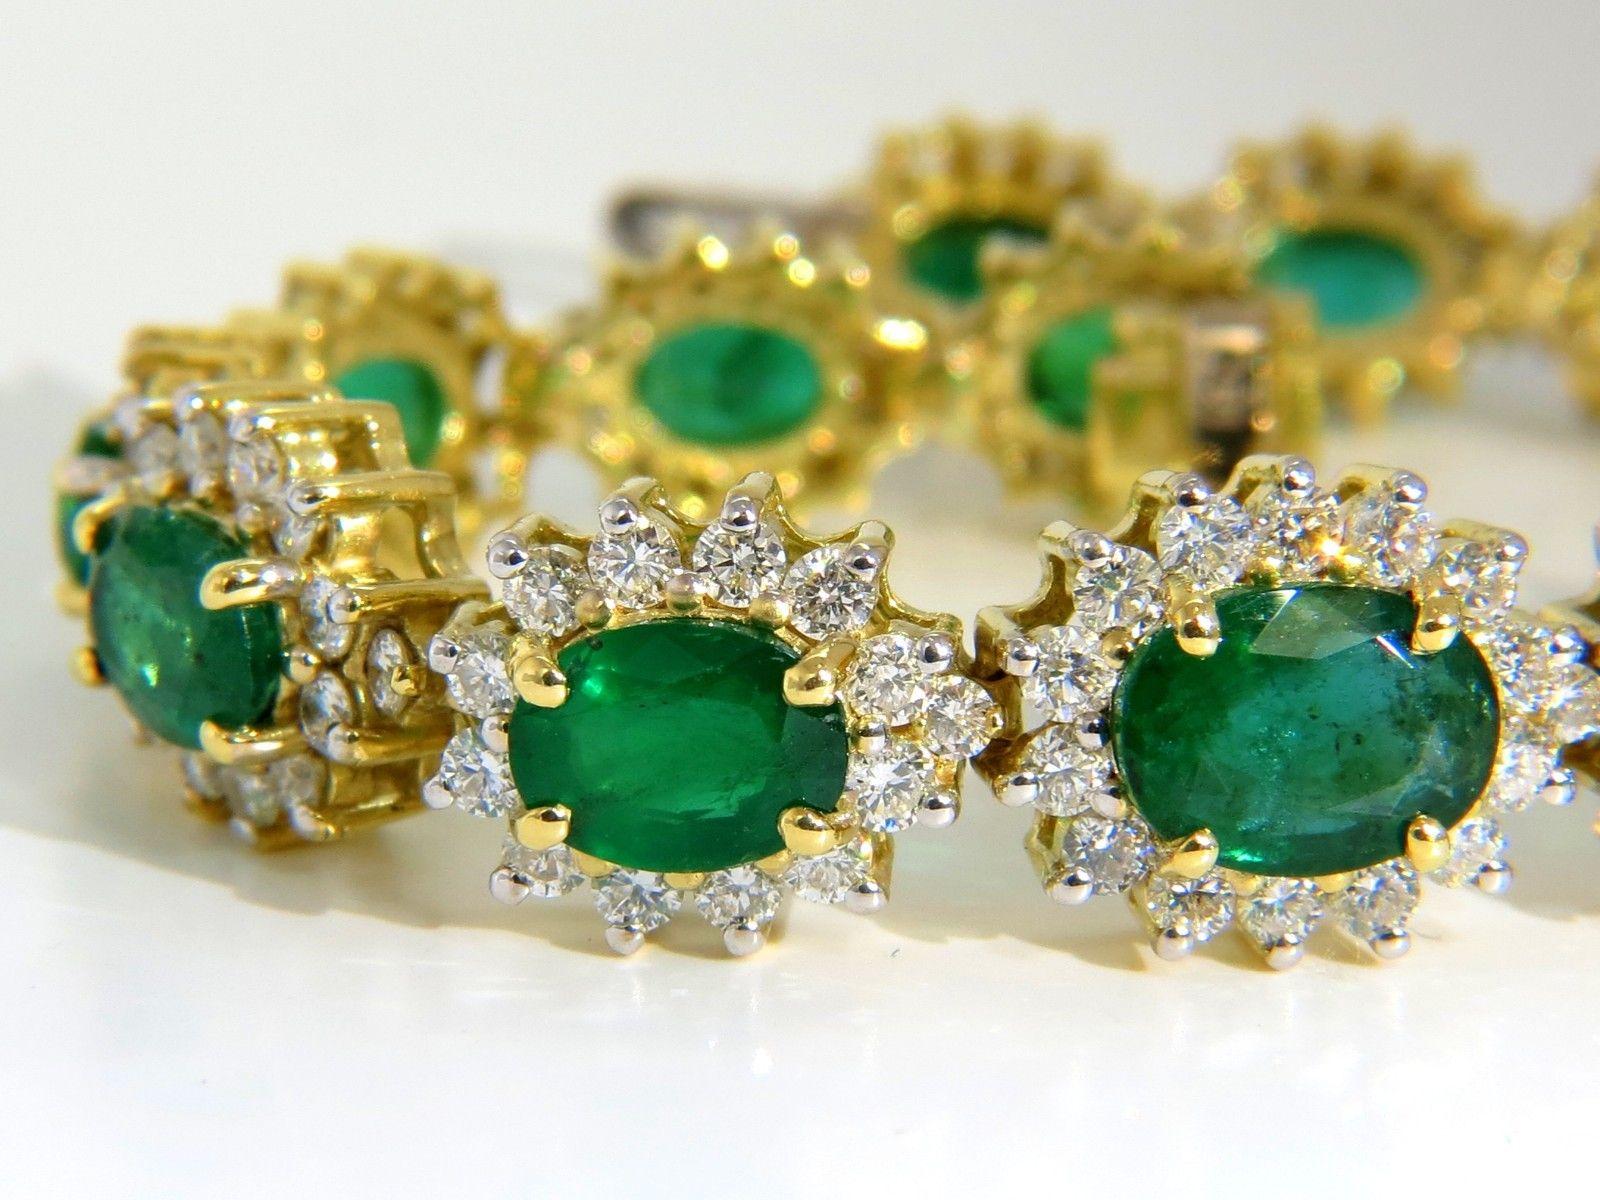 15.00ct. Bracelet halo Emerald Diamond Cluster pour dames.

Emeraudes, Naturelles & sélectionnées parmi les plus belles parcelles.

Les verts zambiens sont vifs, clairs et transparents.

Gradué de 9,1 X 6,9 mm (plus grand au centre)

à 6,1 X4,2mm (à